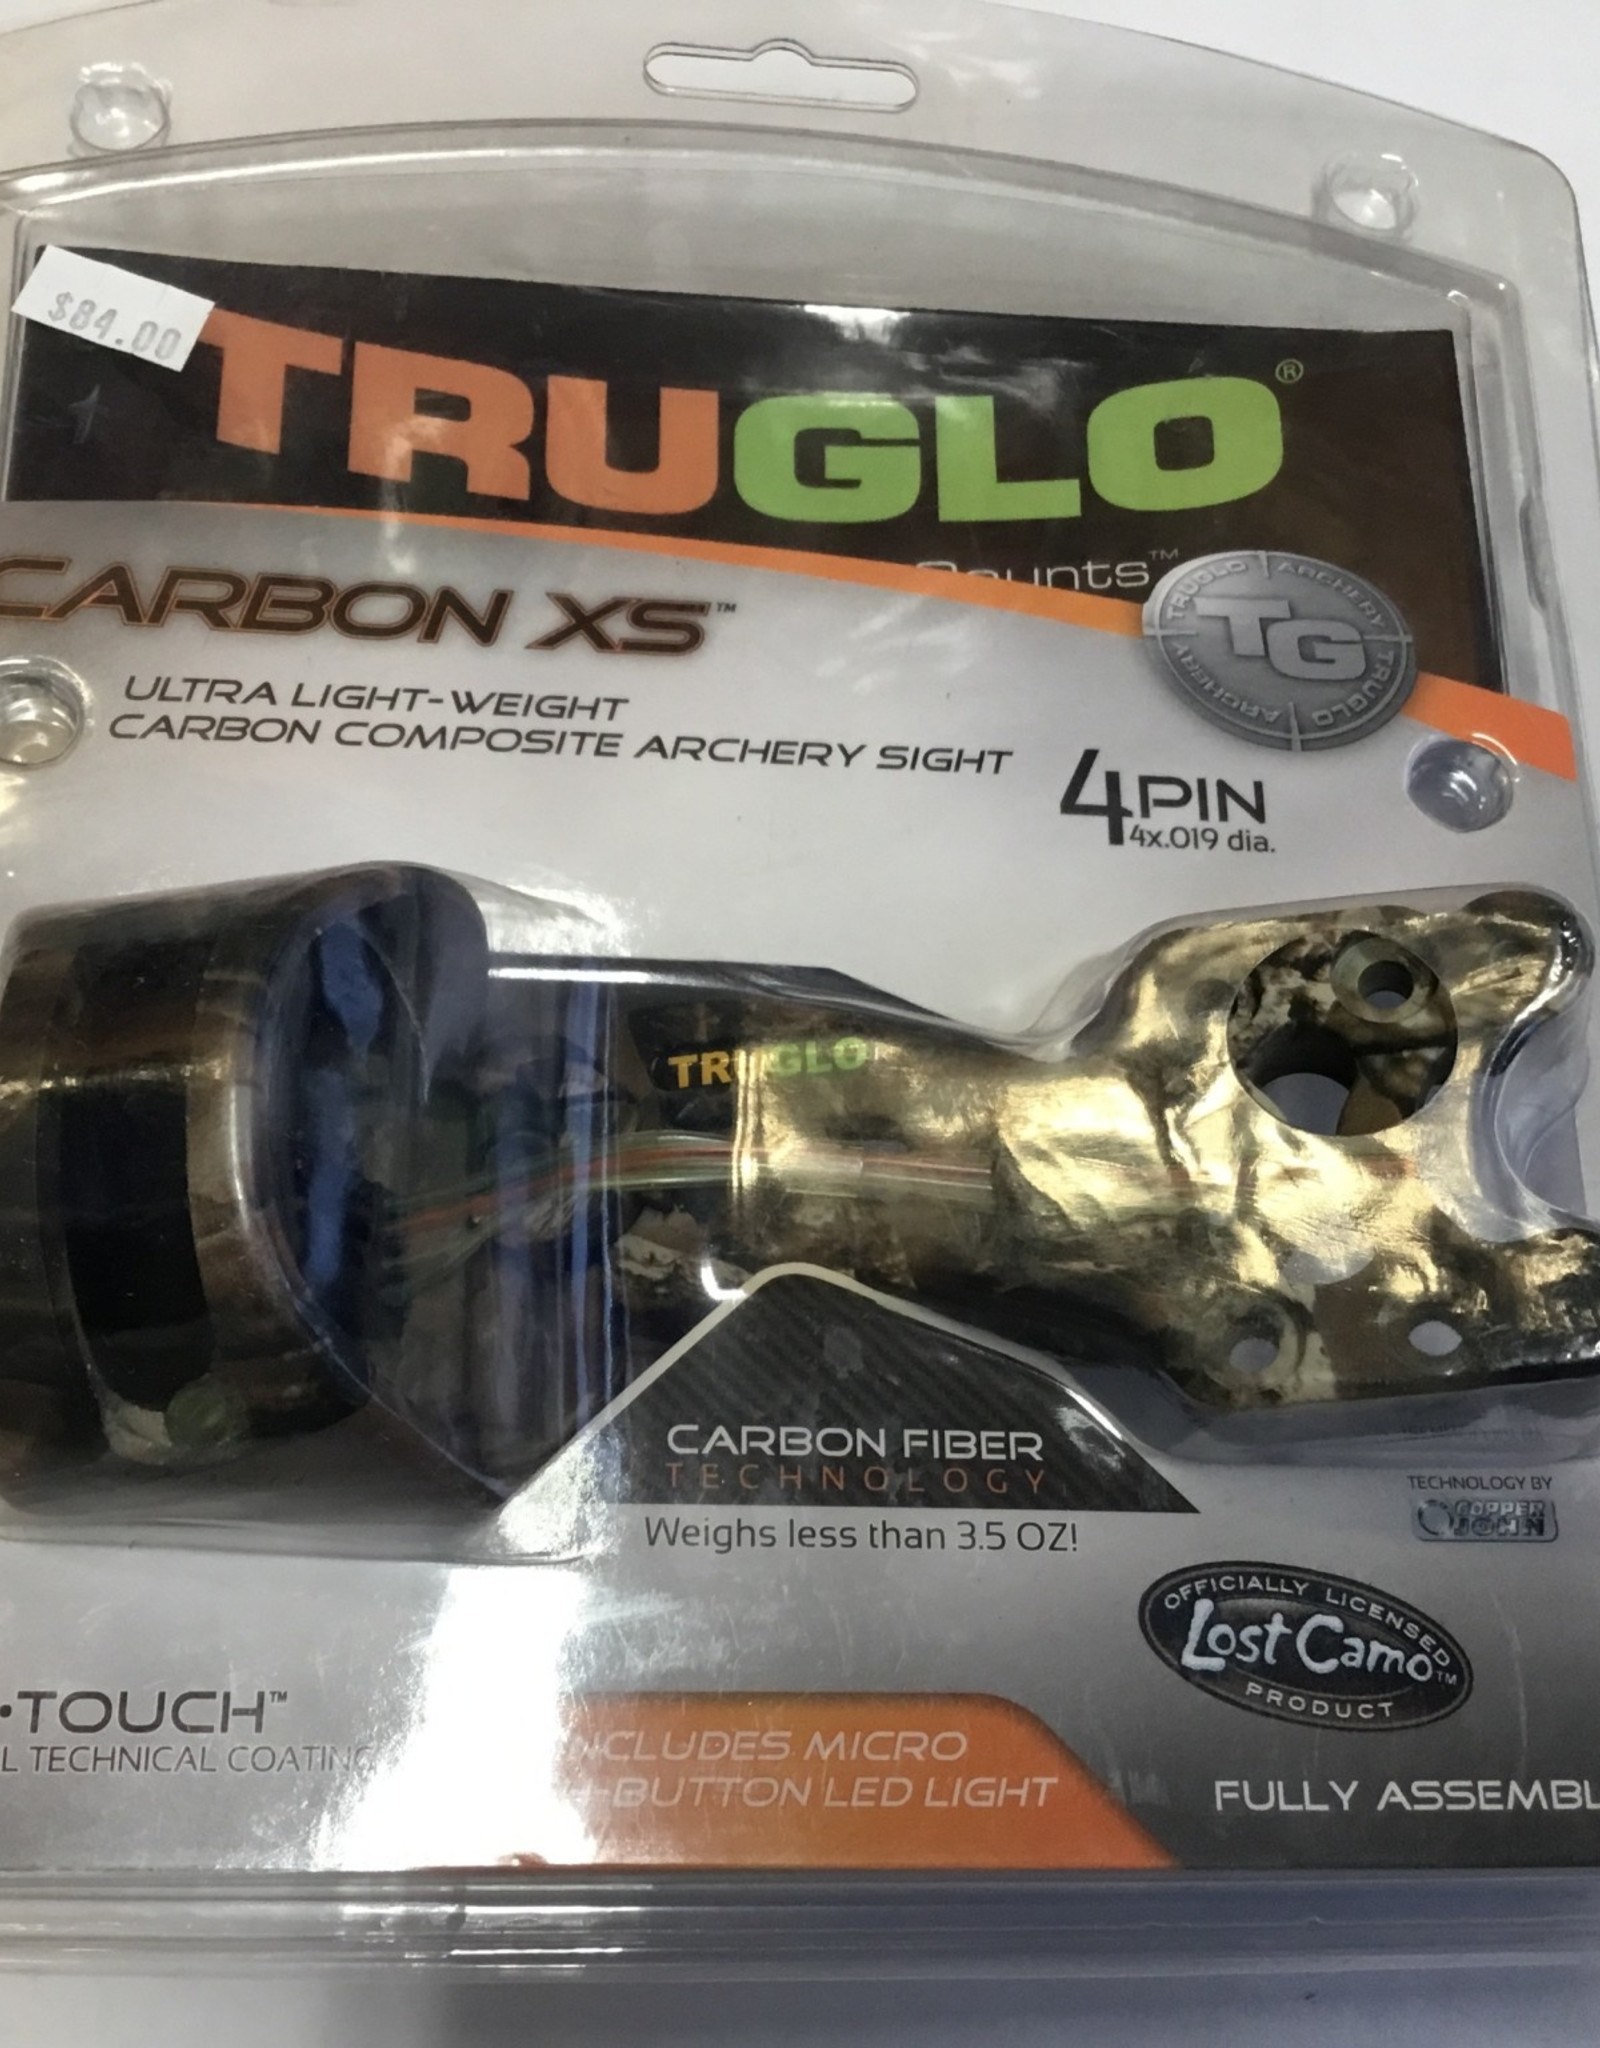 Tru Glo Carbon XS 4 Pin Sight Lost Camo